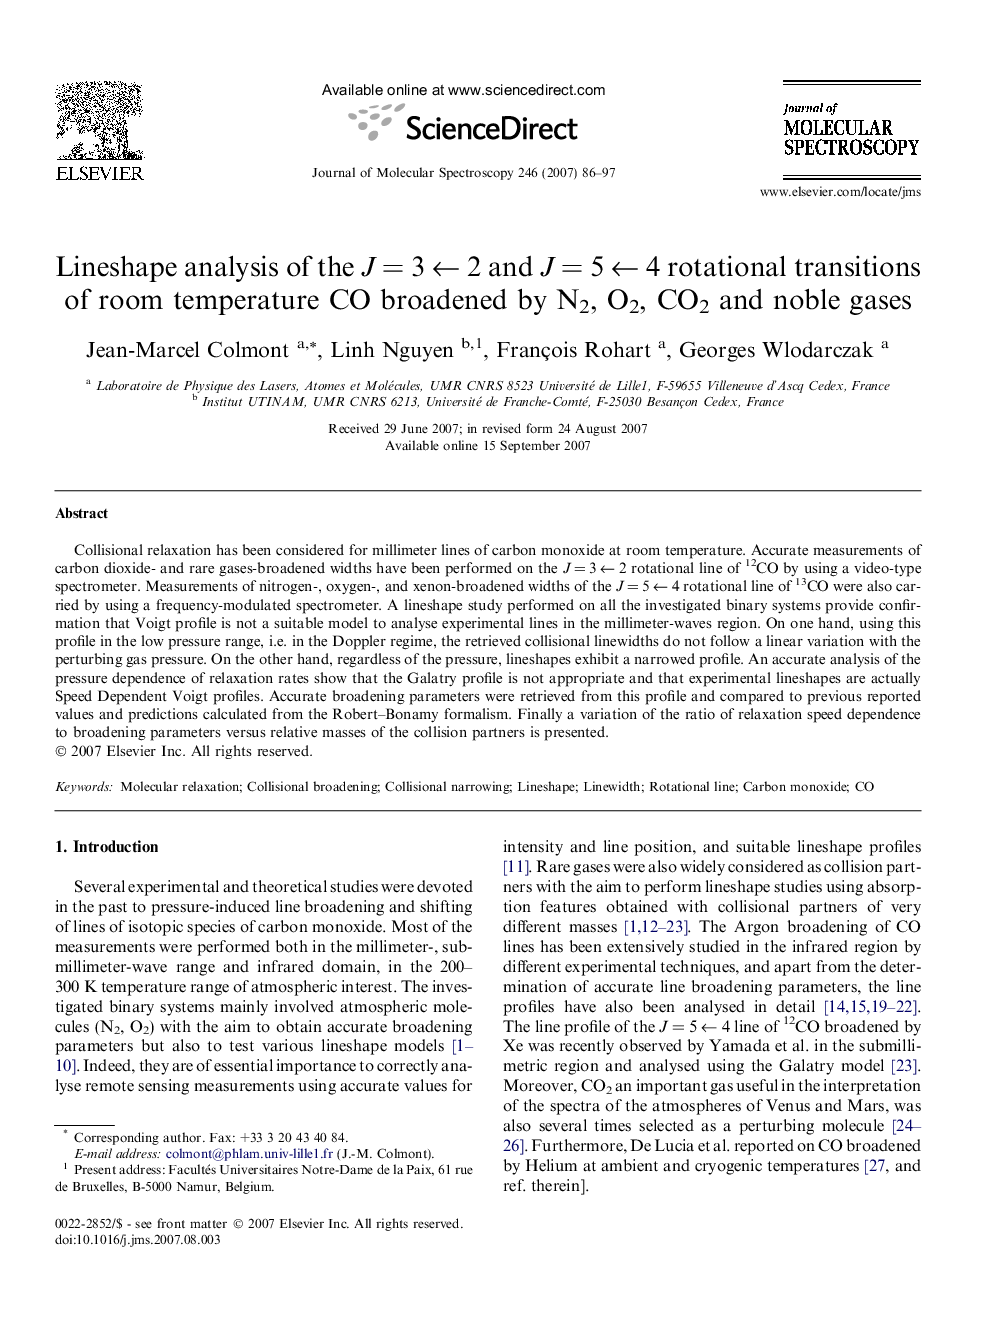 Lineshape analysis of the JÂ =Â 3Â âÂ 2 and JÂ =Â 5Â âÂ 4 rotational transitions of room temperature CO broadened by N2, O2, CO2 and noble gases